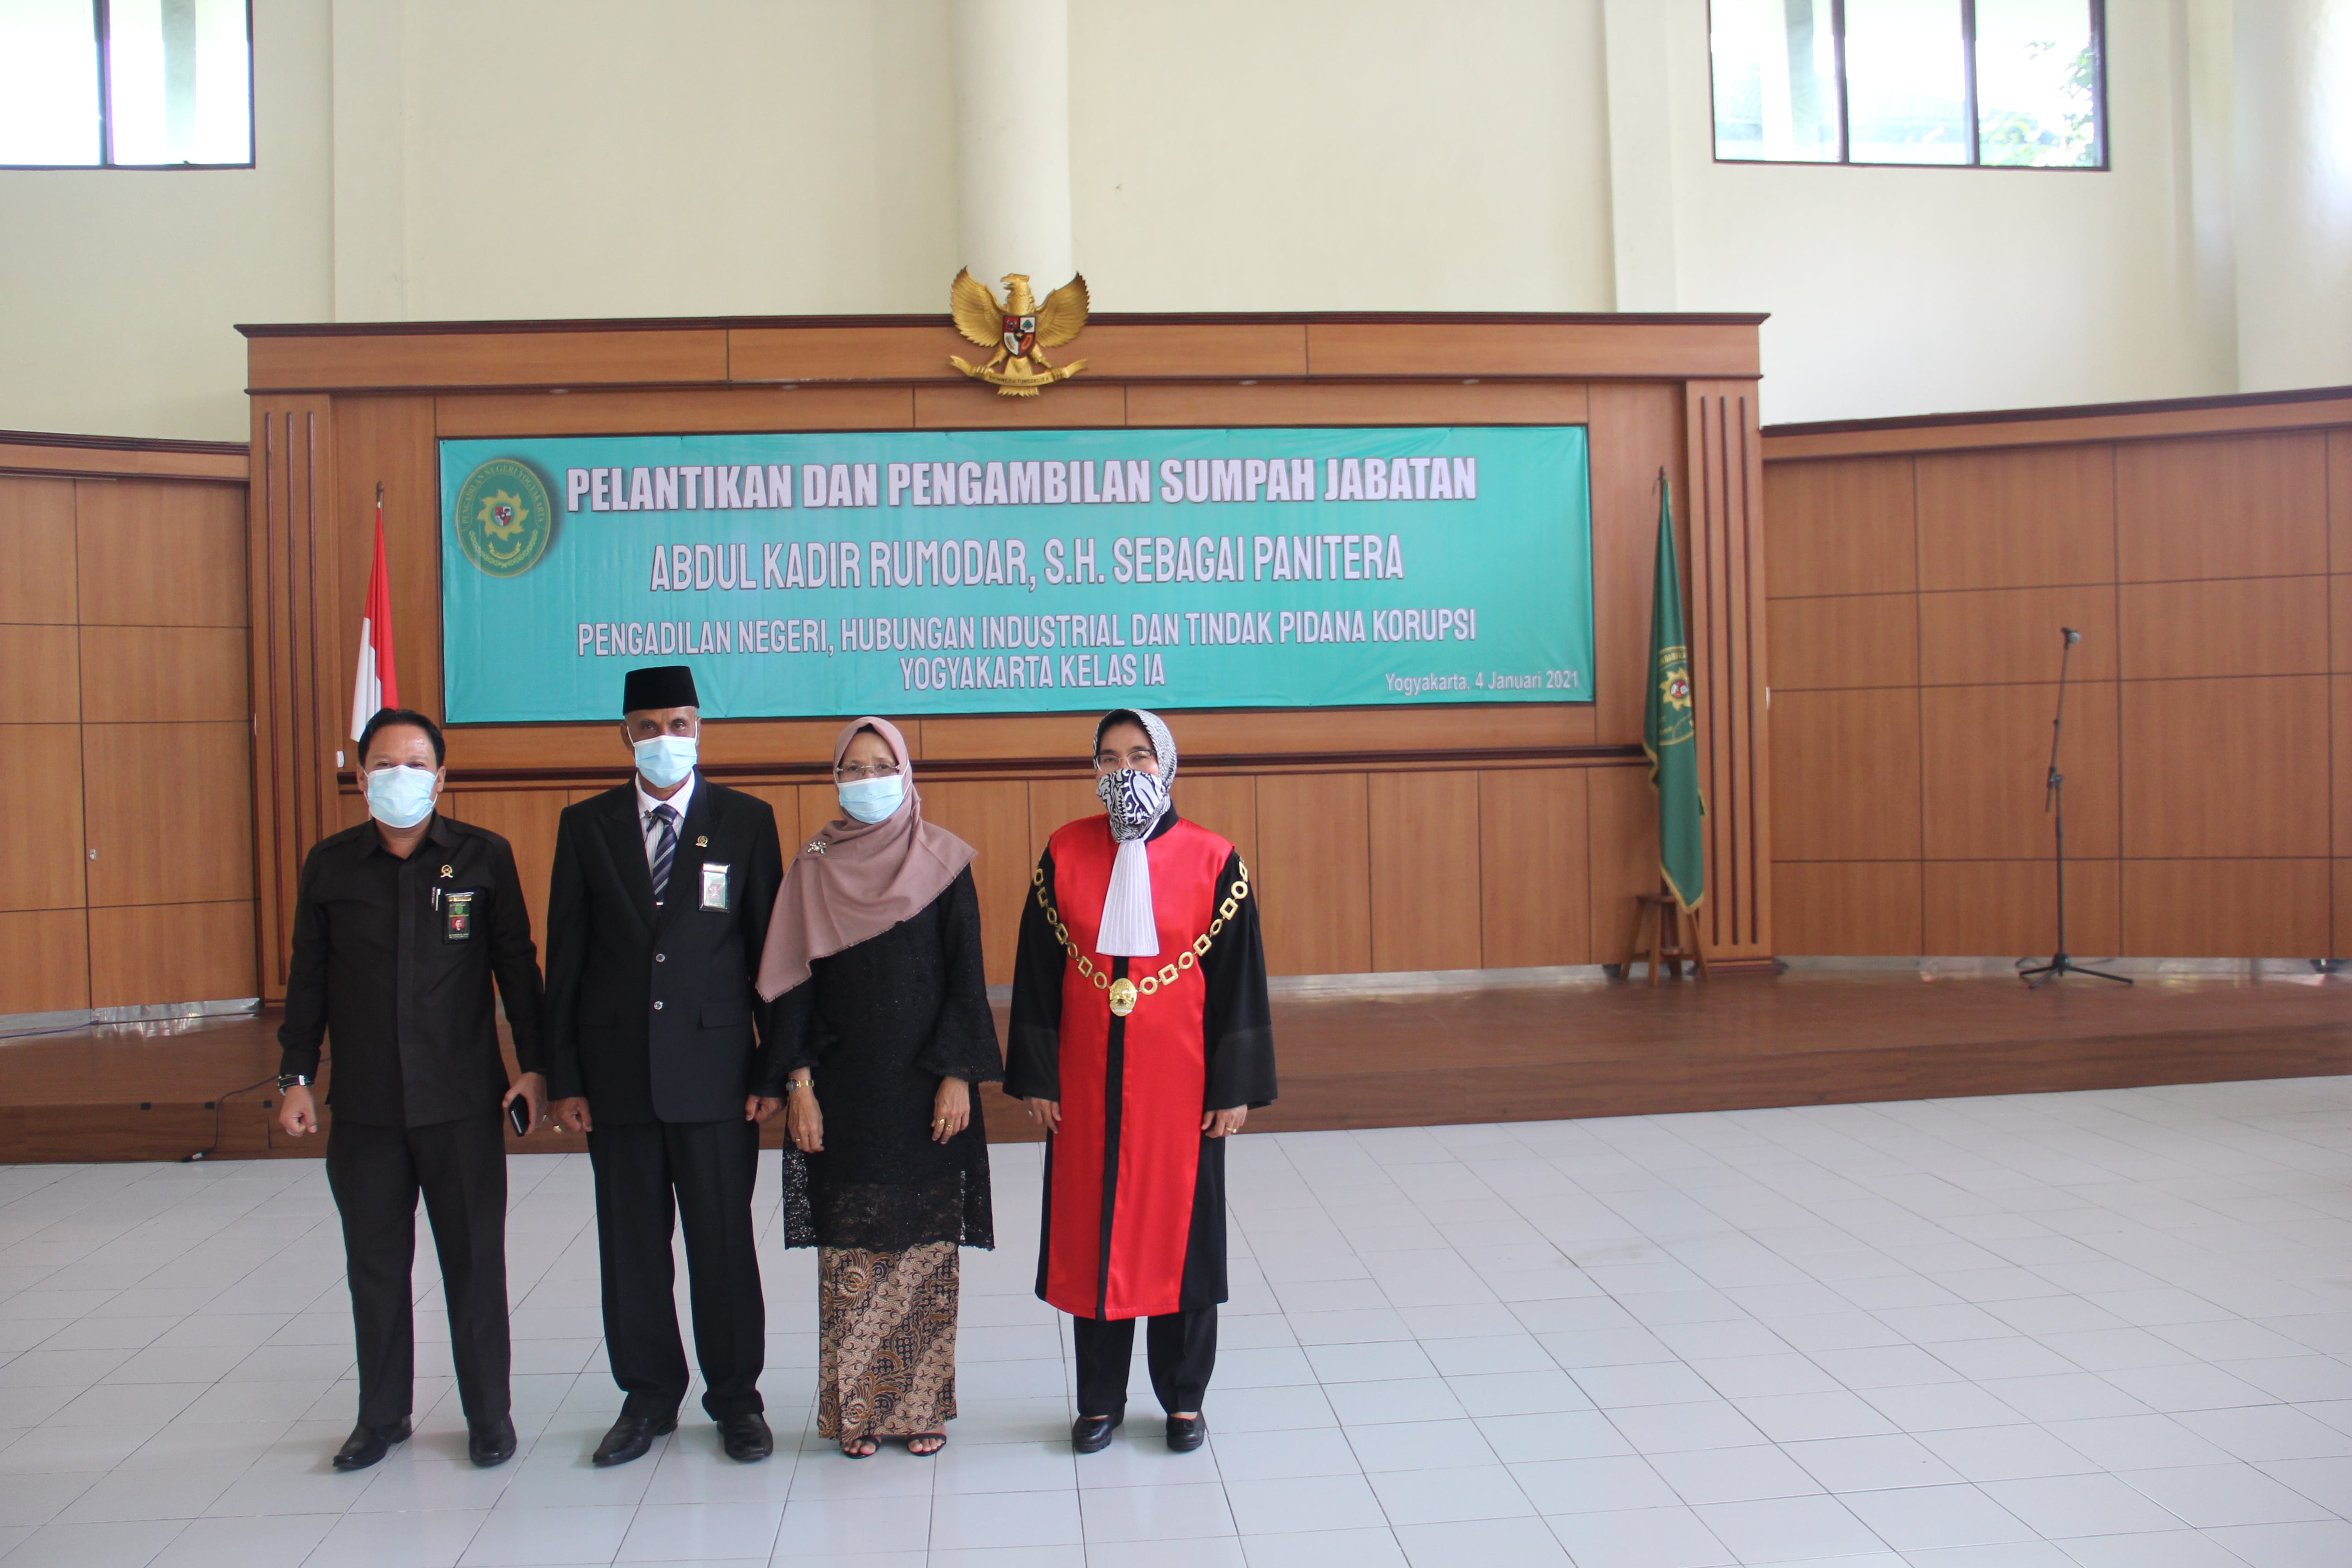 Pelantikan dan Pengambilan Sumpah Jabatan Panitera Pengadilan Negeri Yogyakarta Kelas IA